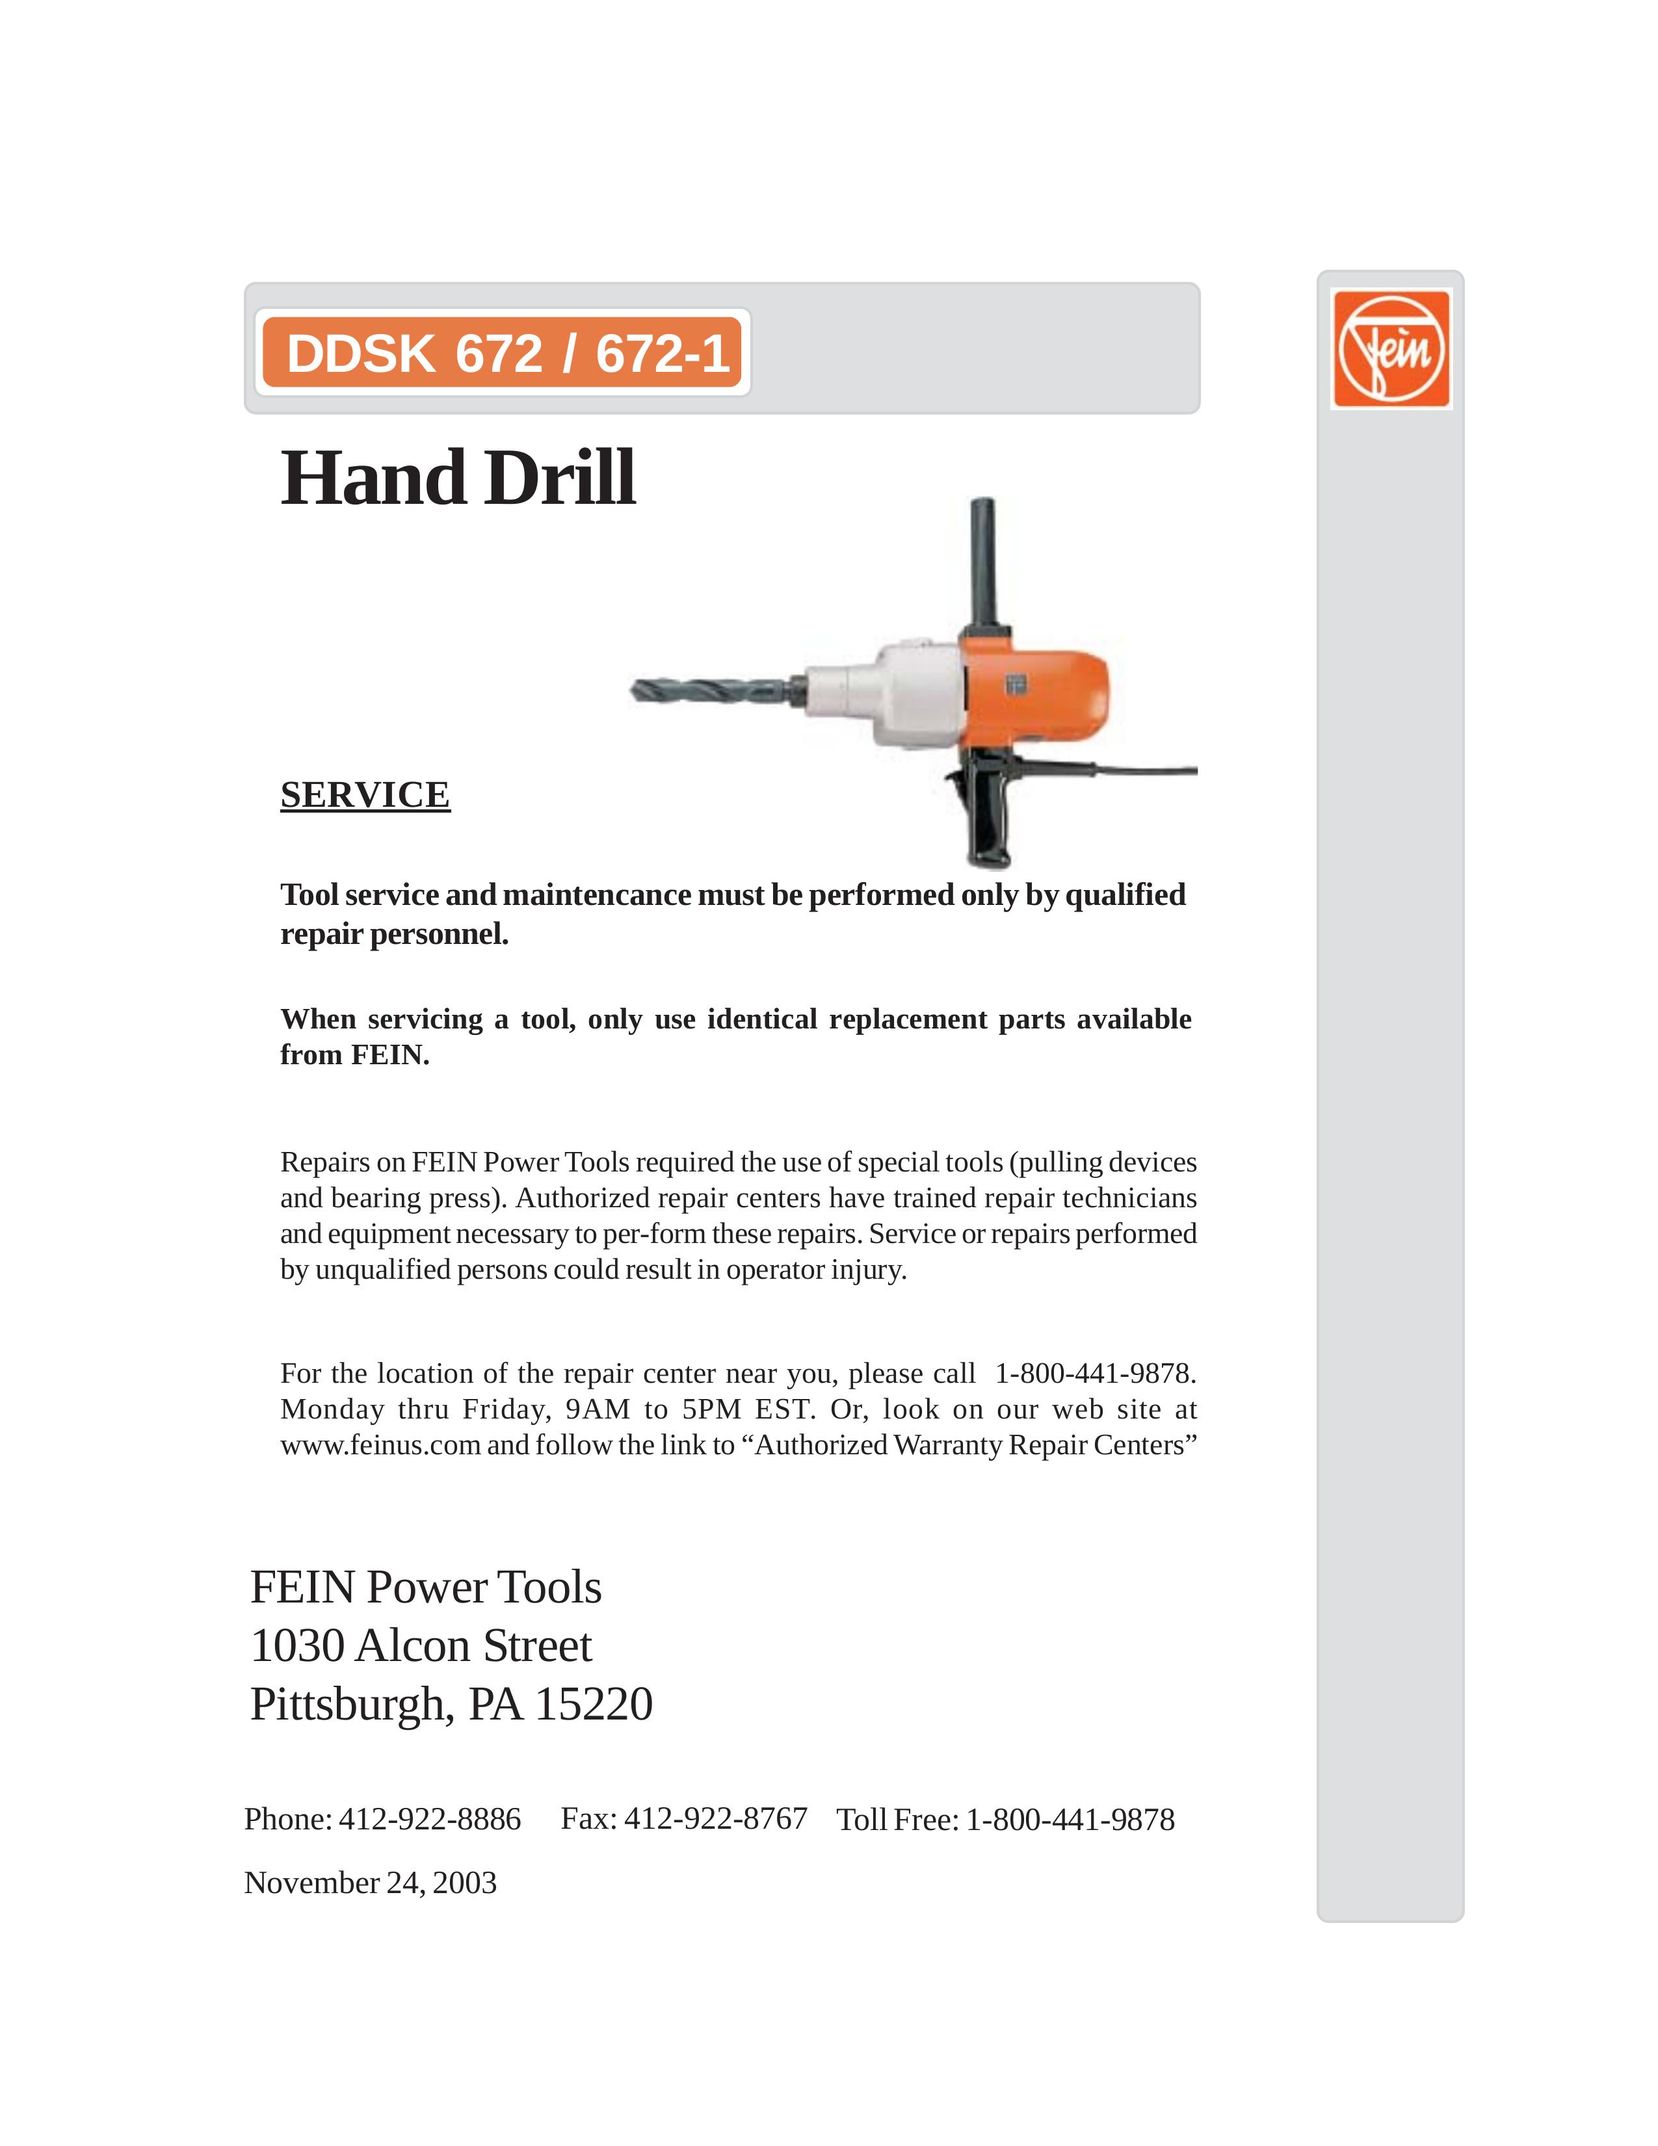 FEIN Power Tools DDSK 672 Drill User Manual